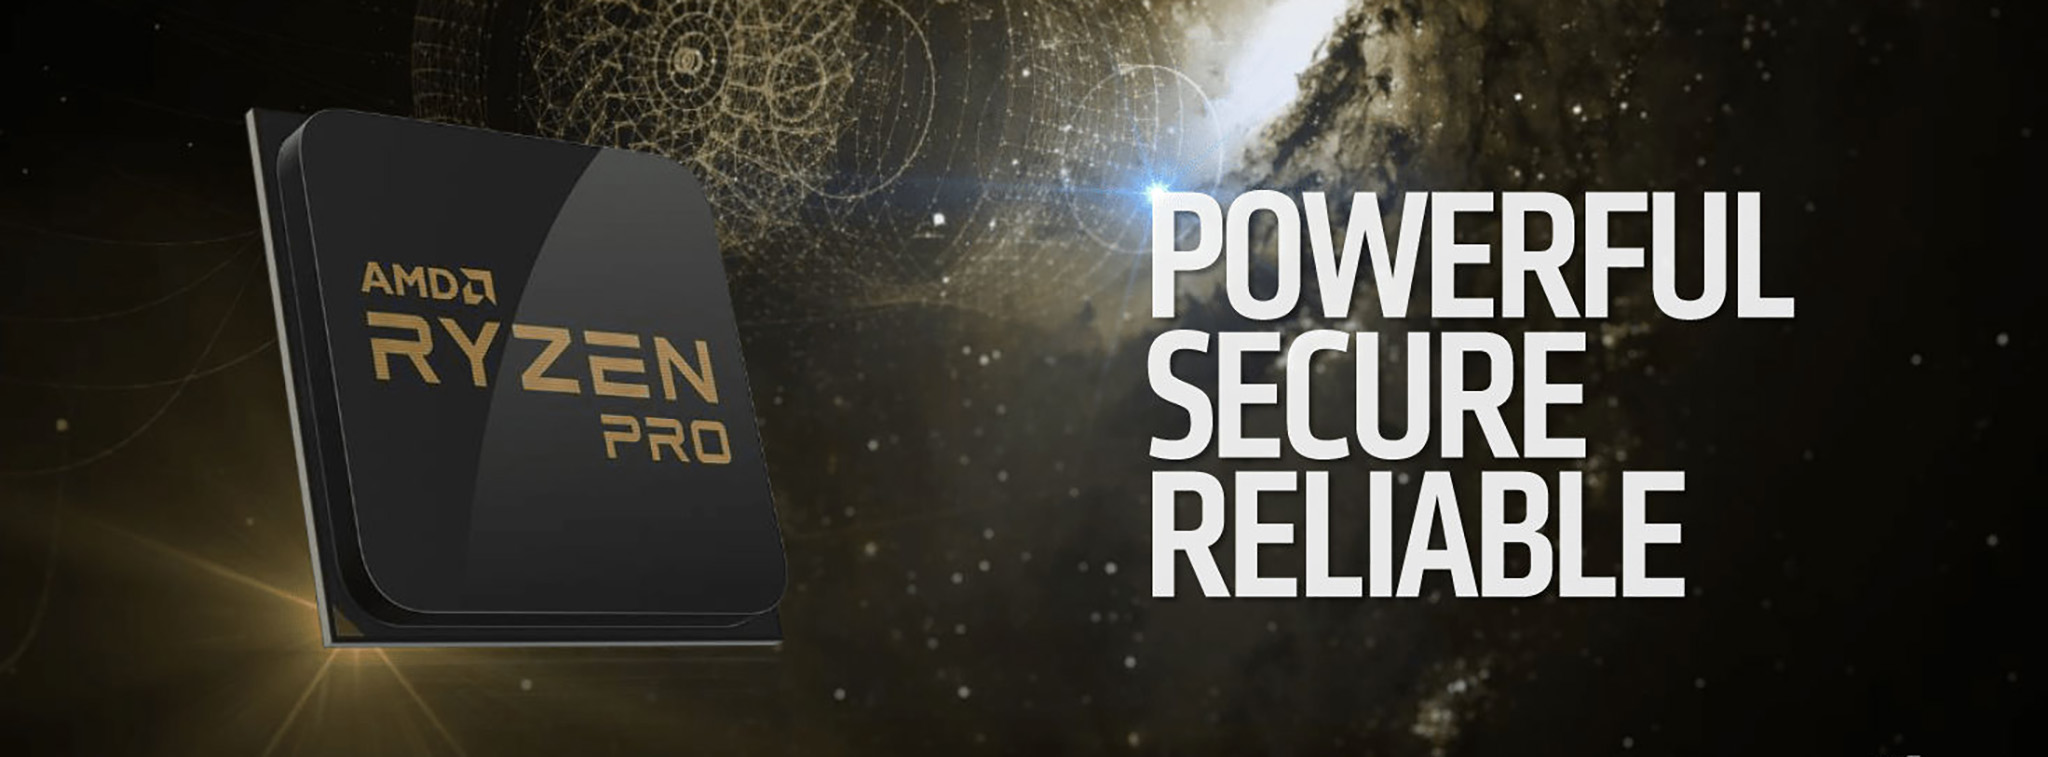 AMD công bố Ryzen PRO tích hợp các tính năng bảo mật và quản lý, cạnh tranh Intel vPro